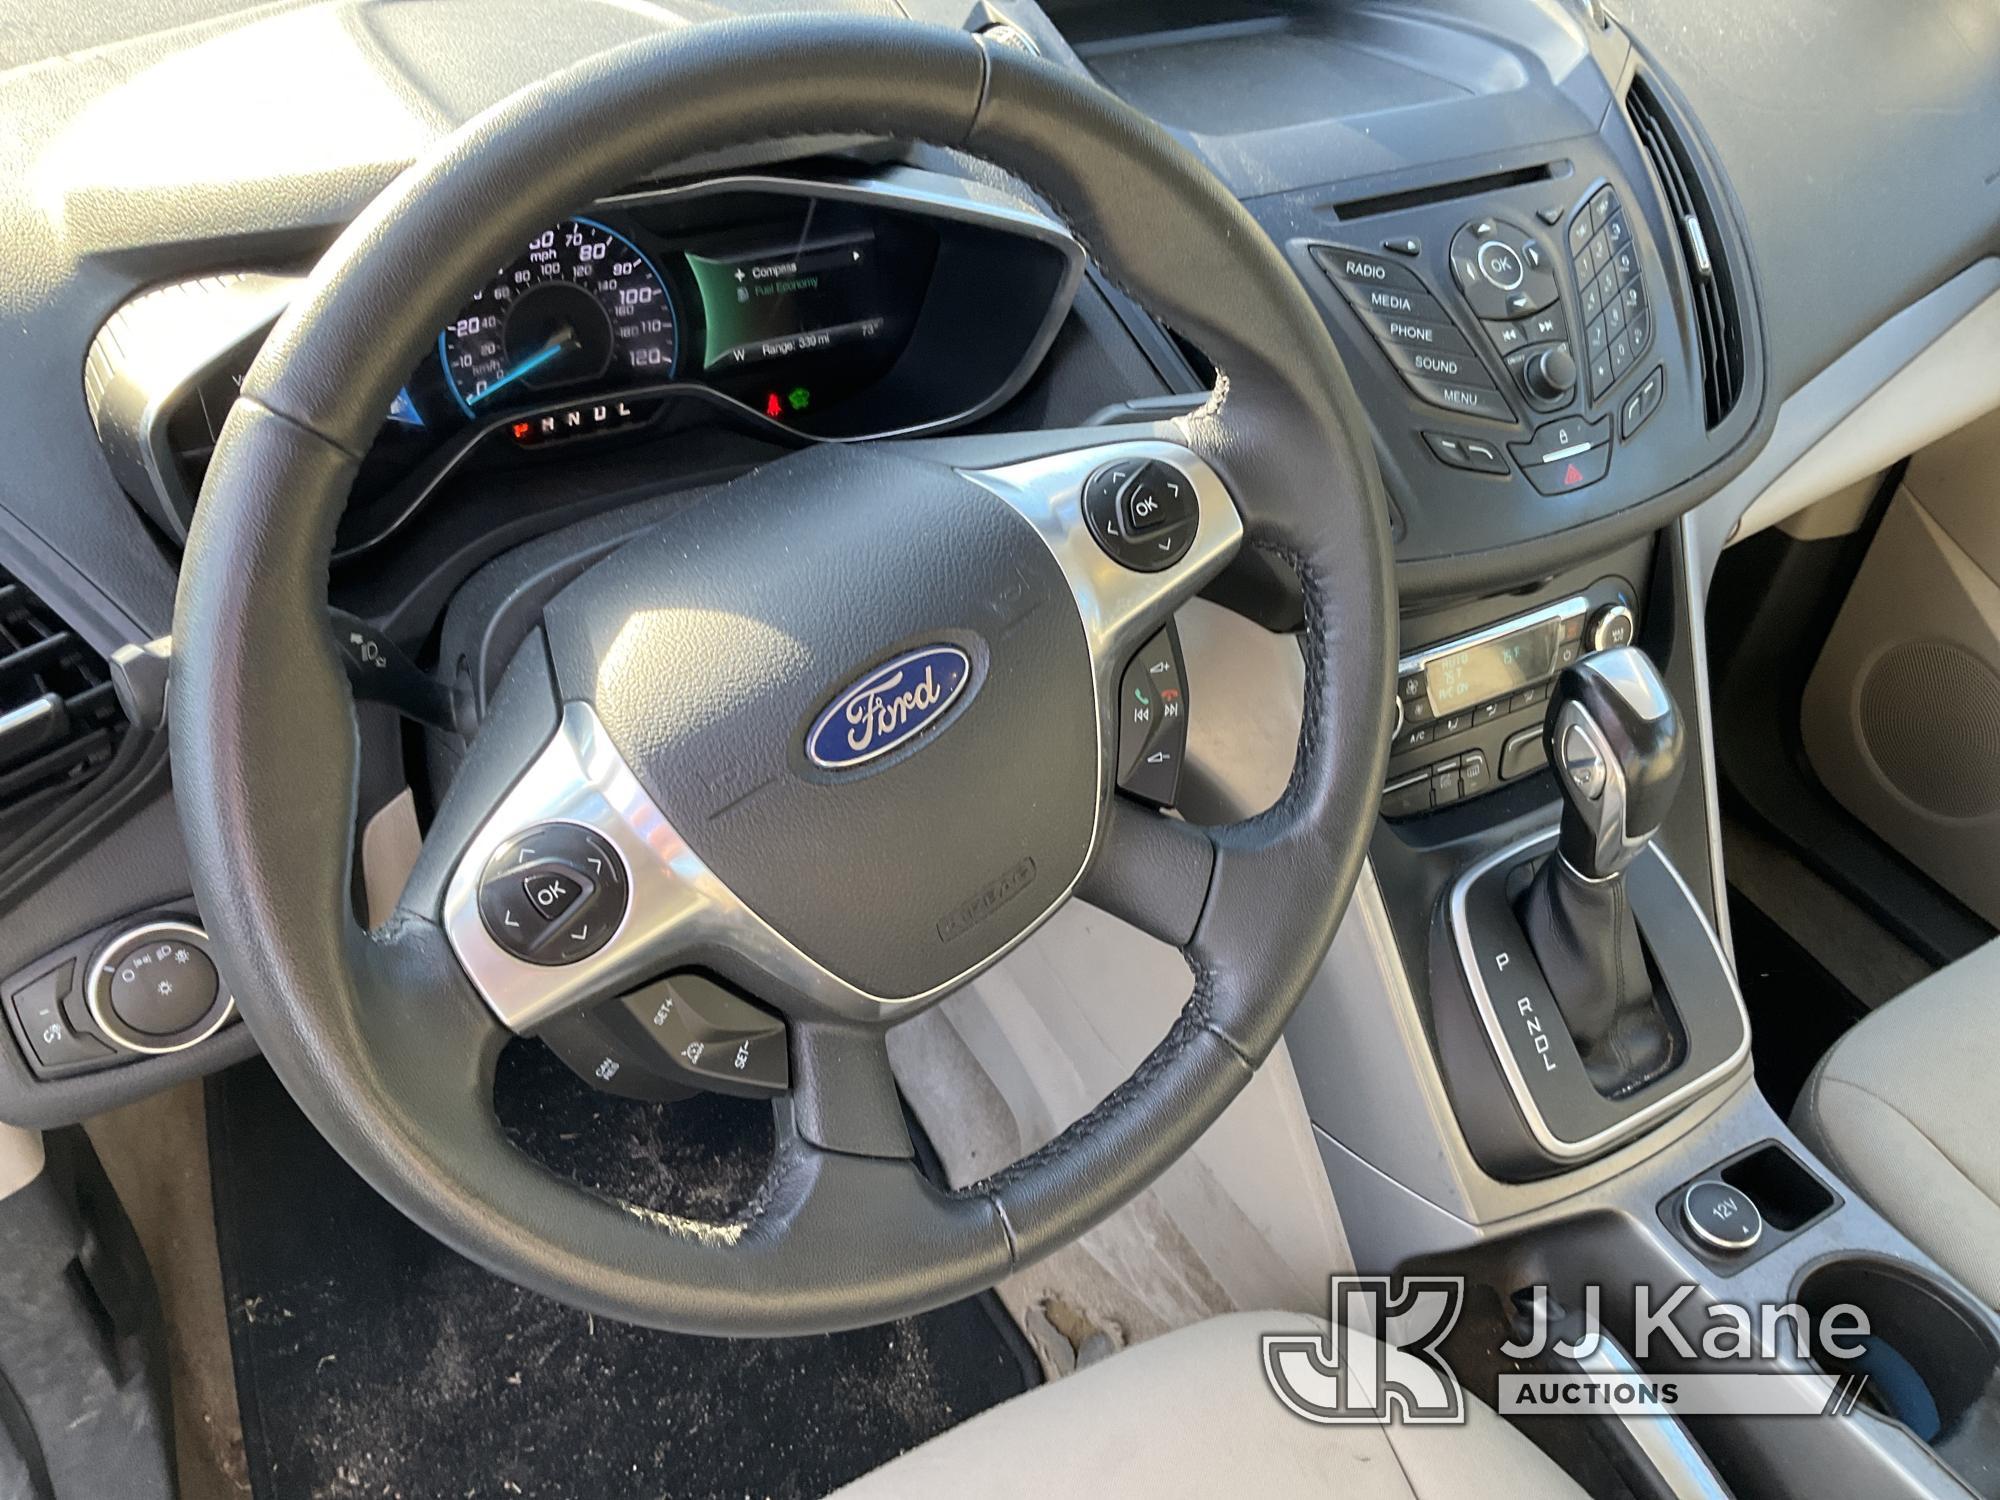 (Bellport, NY) 2016 Ford C-Max Hybrid 4-Door Hatch Back Runs & Moves, Stop Safely Warning On, Bad Ba